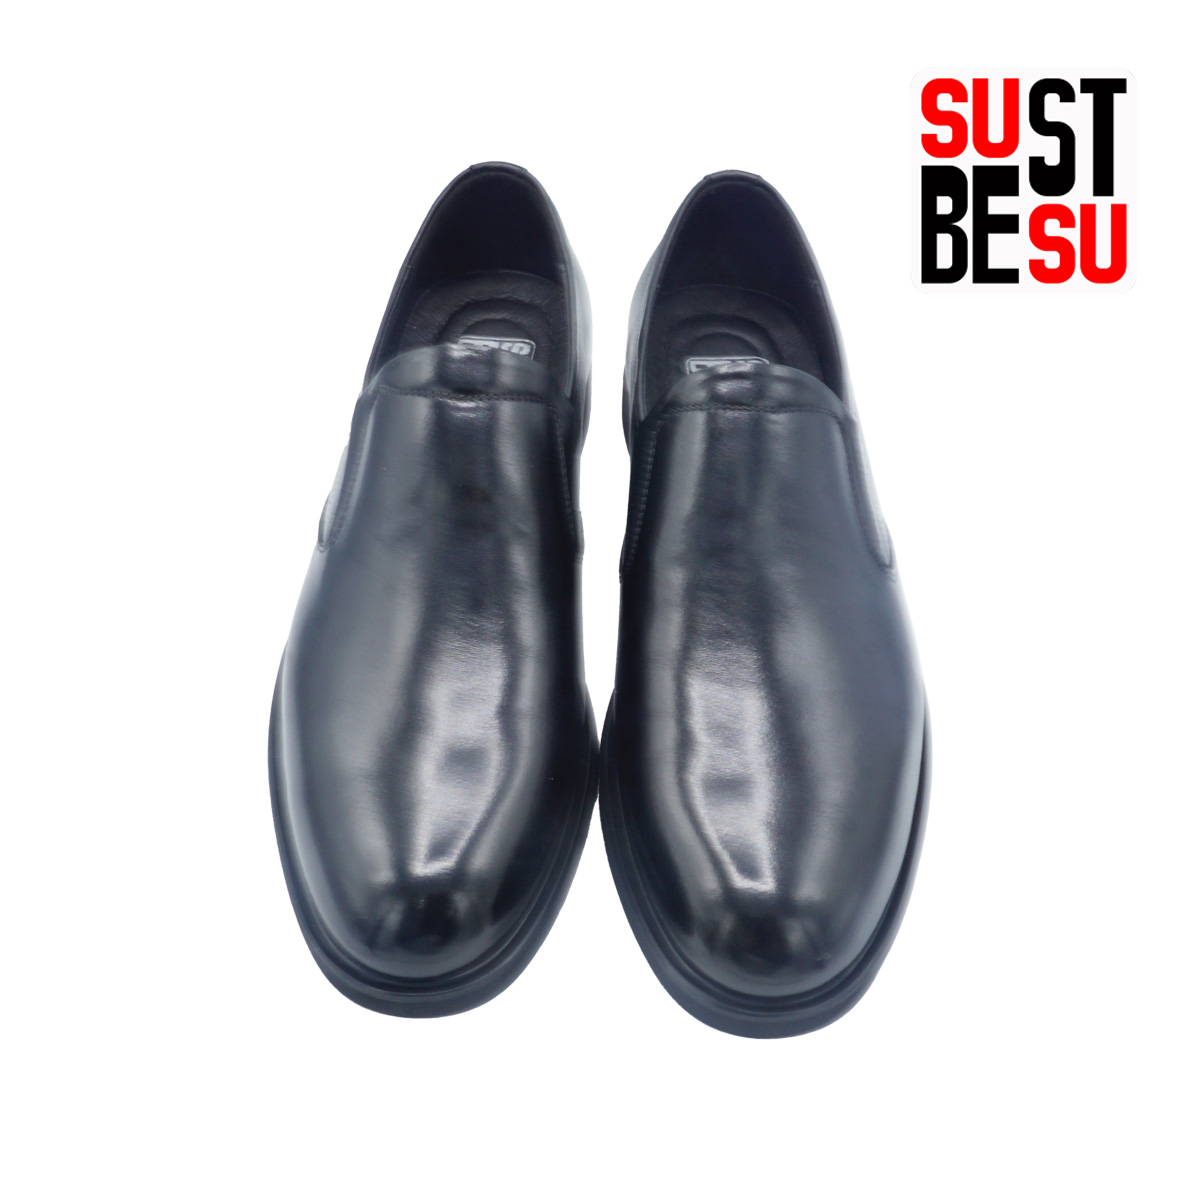 giầy công sở nam SUBESTSU 824-6078 màu đen